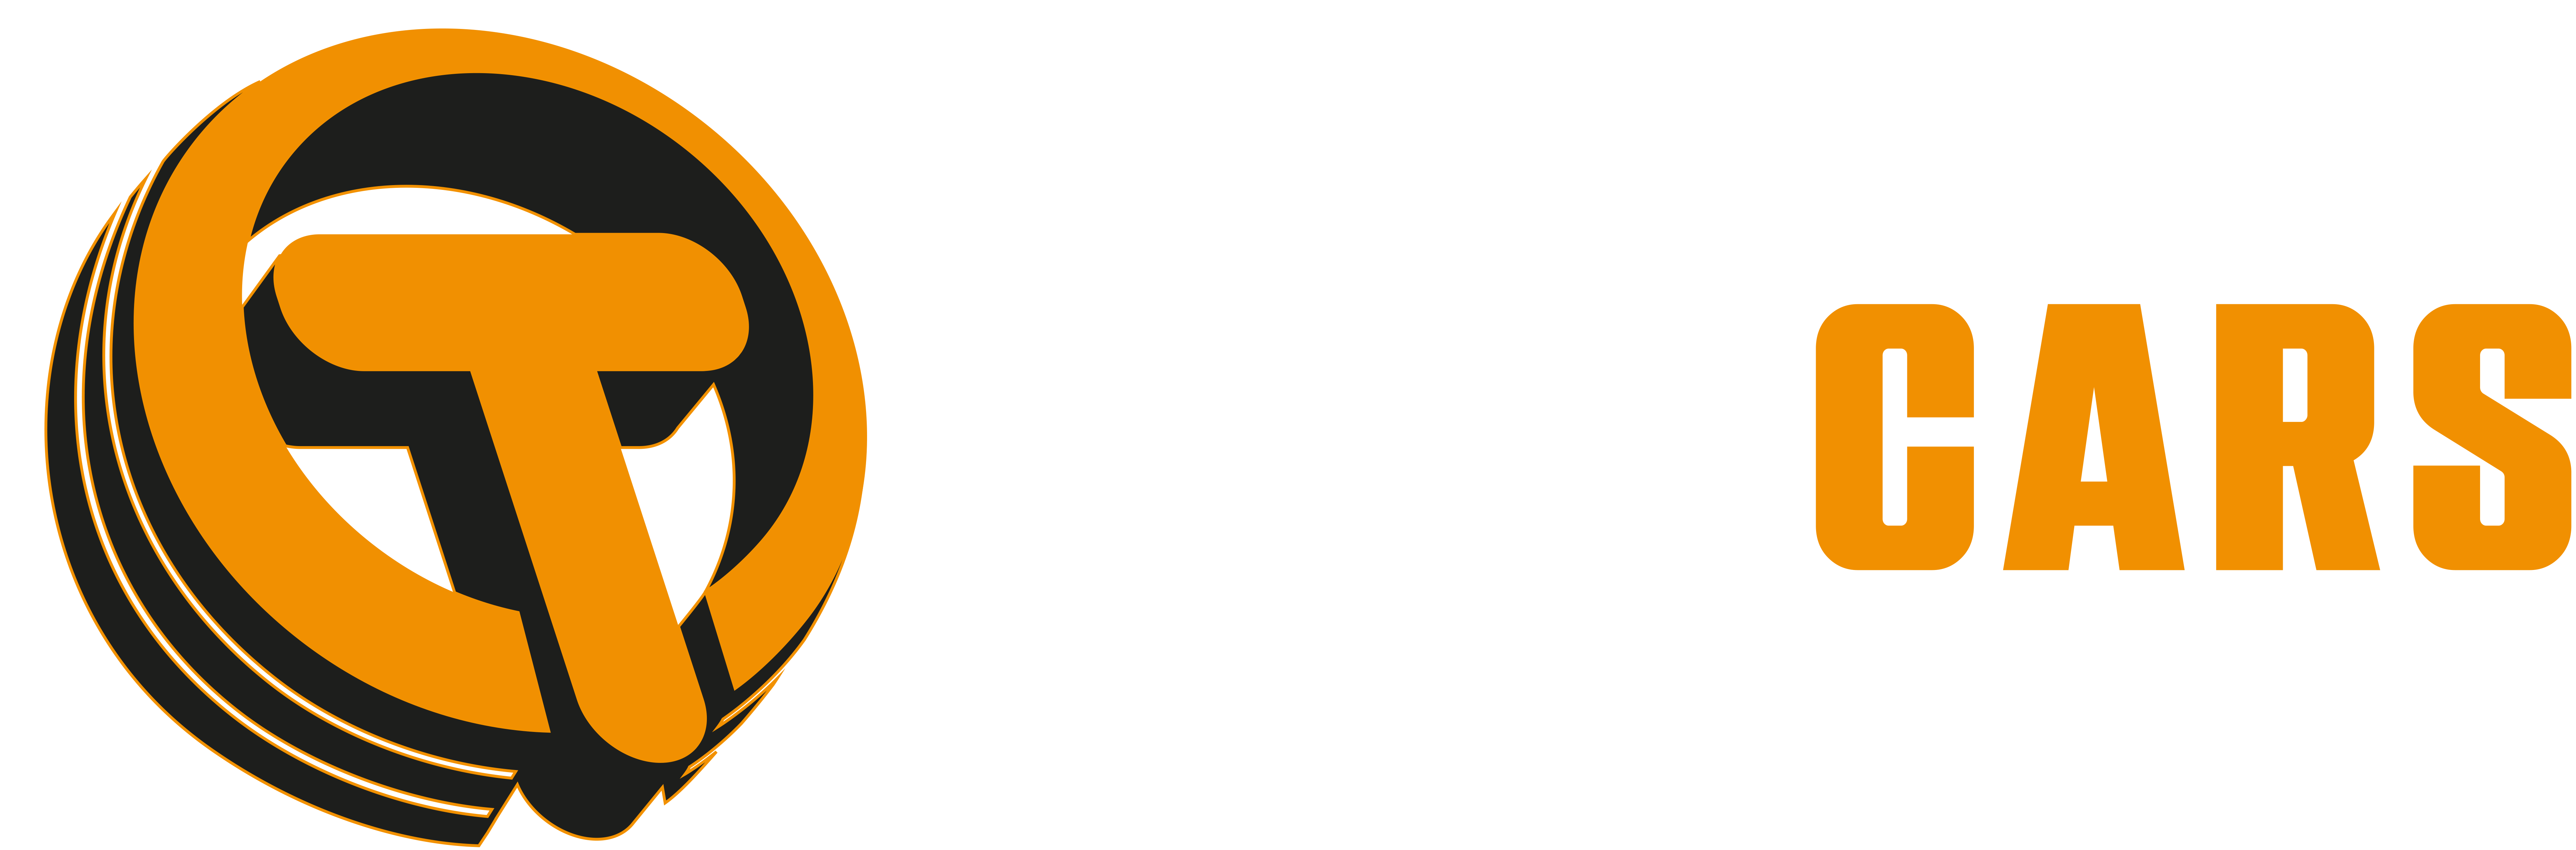 trubicars logo on draker background